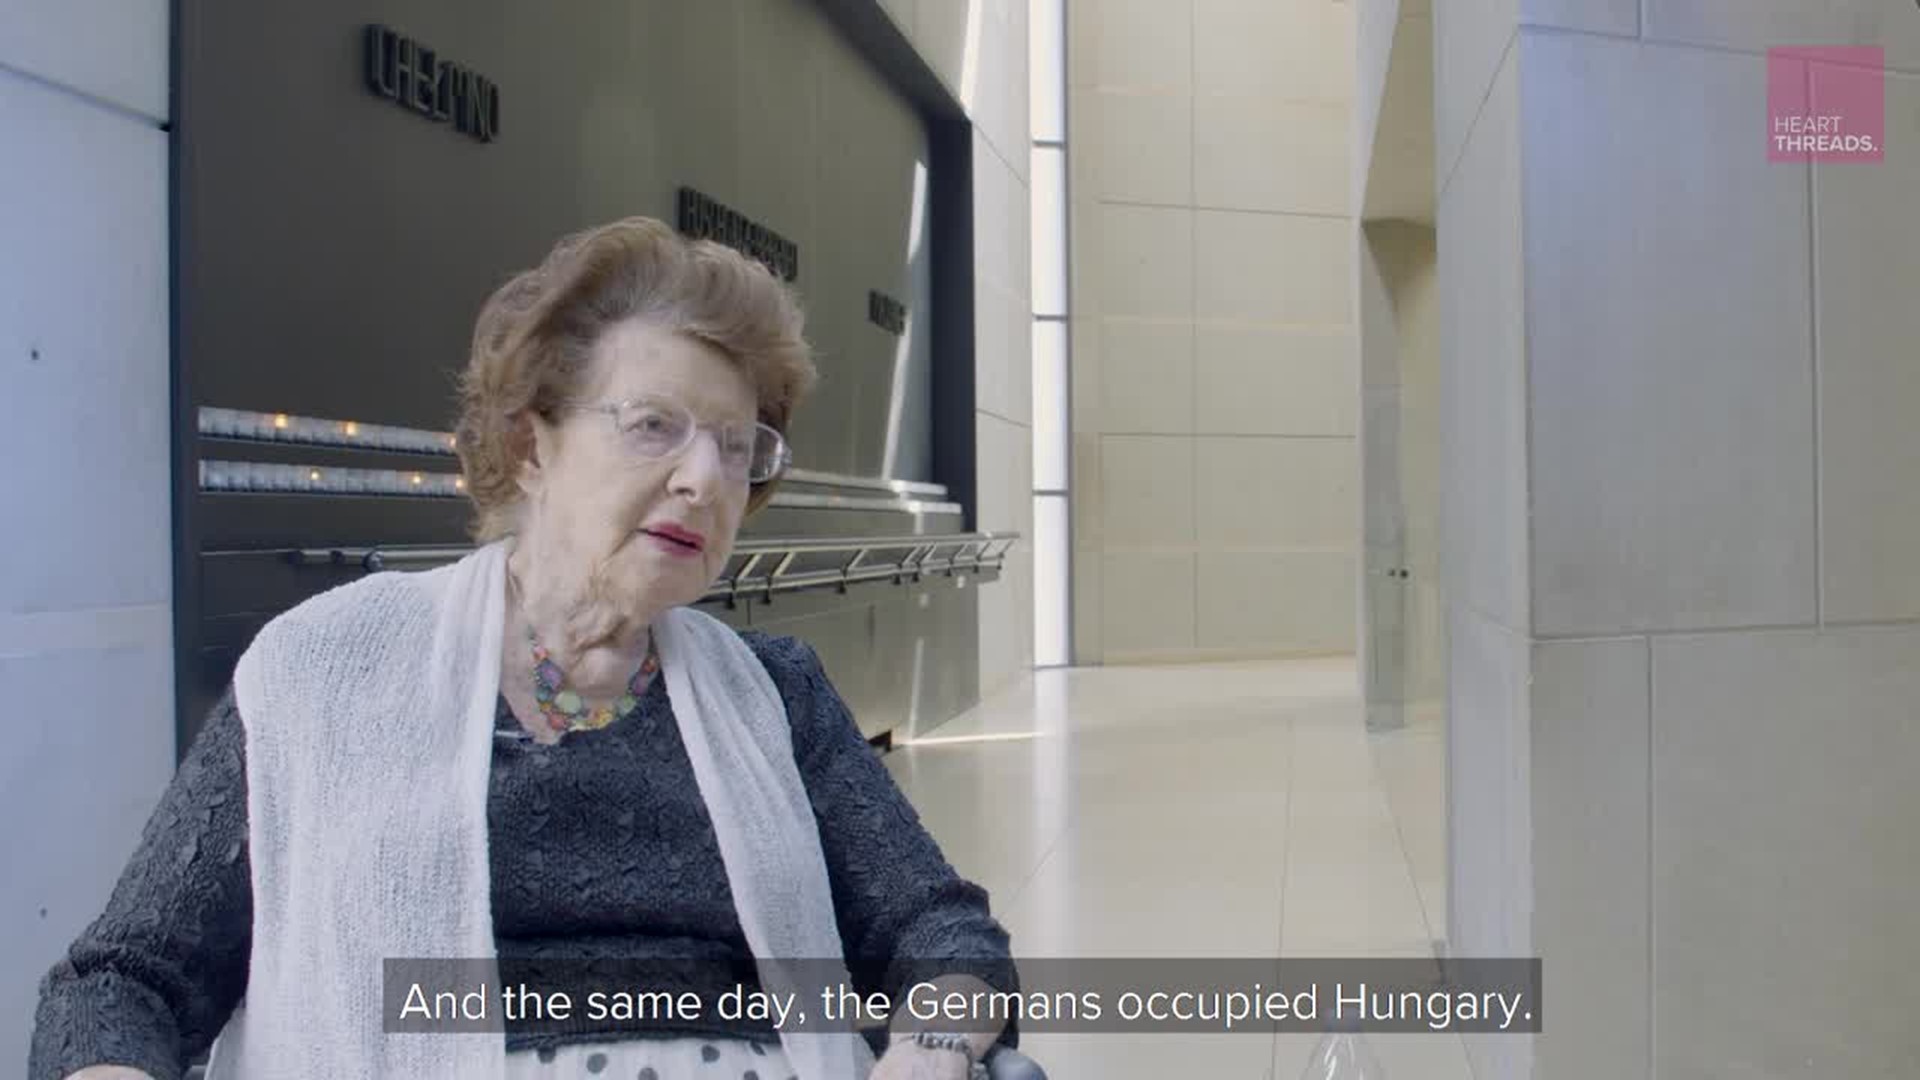 Holocaust survivor recalls the lie that saved her life at Auschwitz - Courtesy Heartthreads